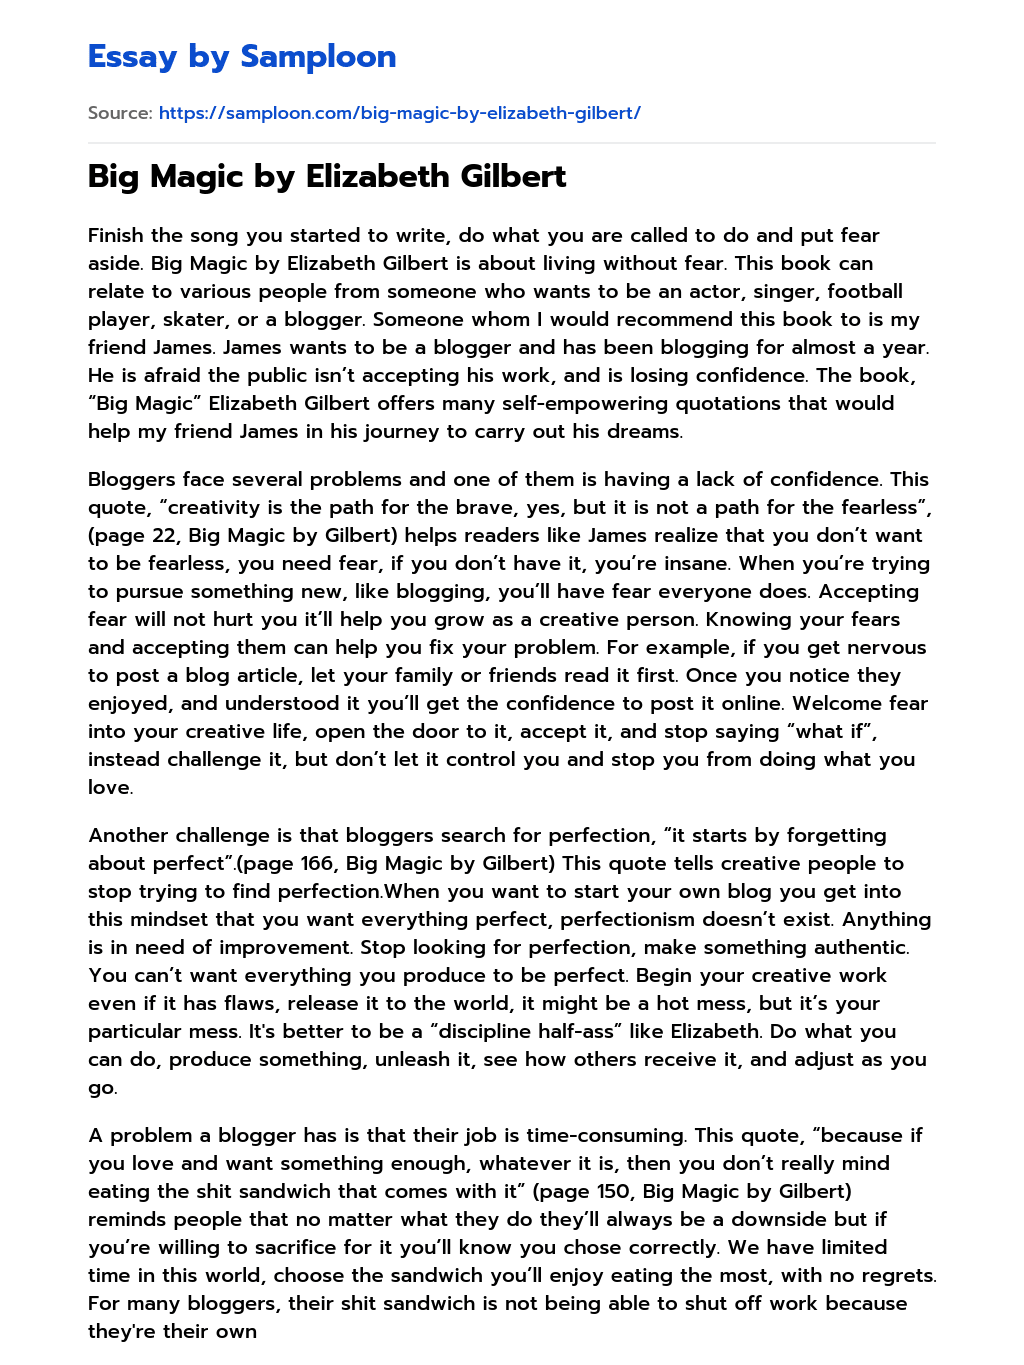 Big Magic by Elizabeth Gilbert essay